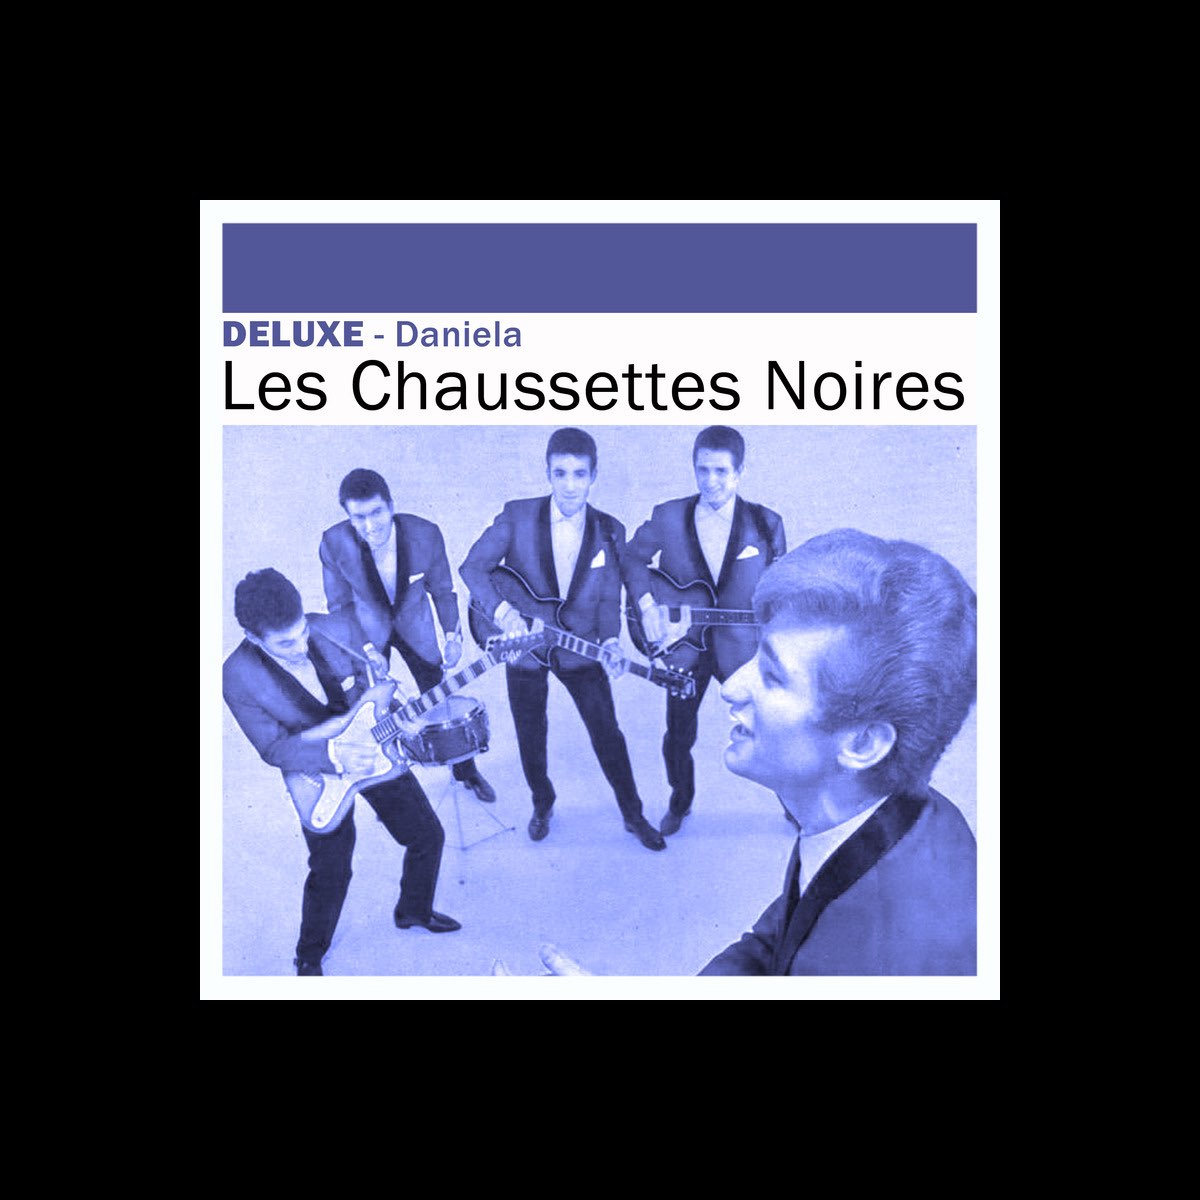 Deluxe : Daniela” álbum de Les Chaussettes Noires en Apple Music